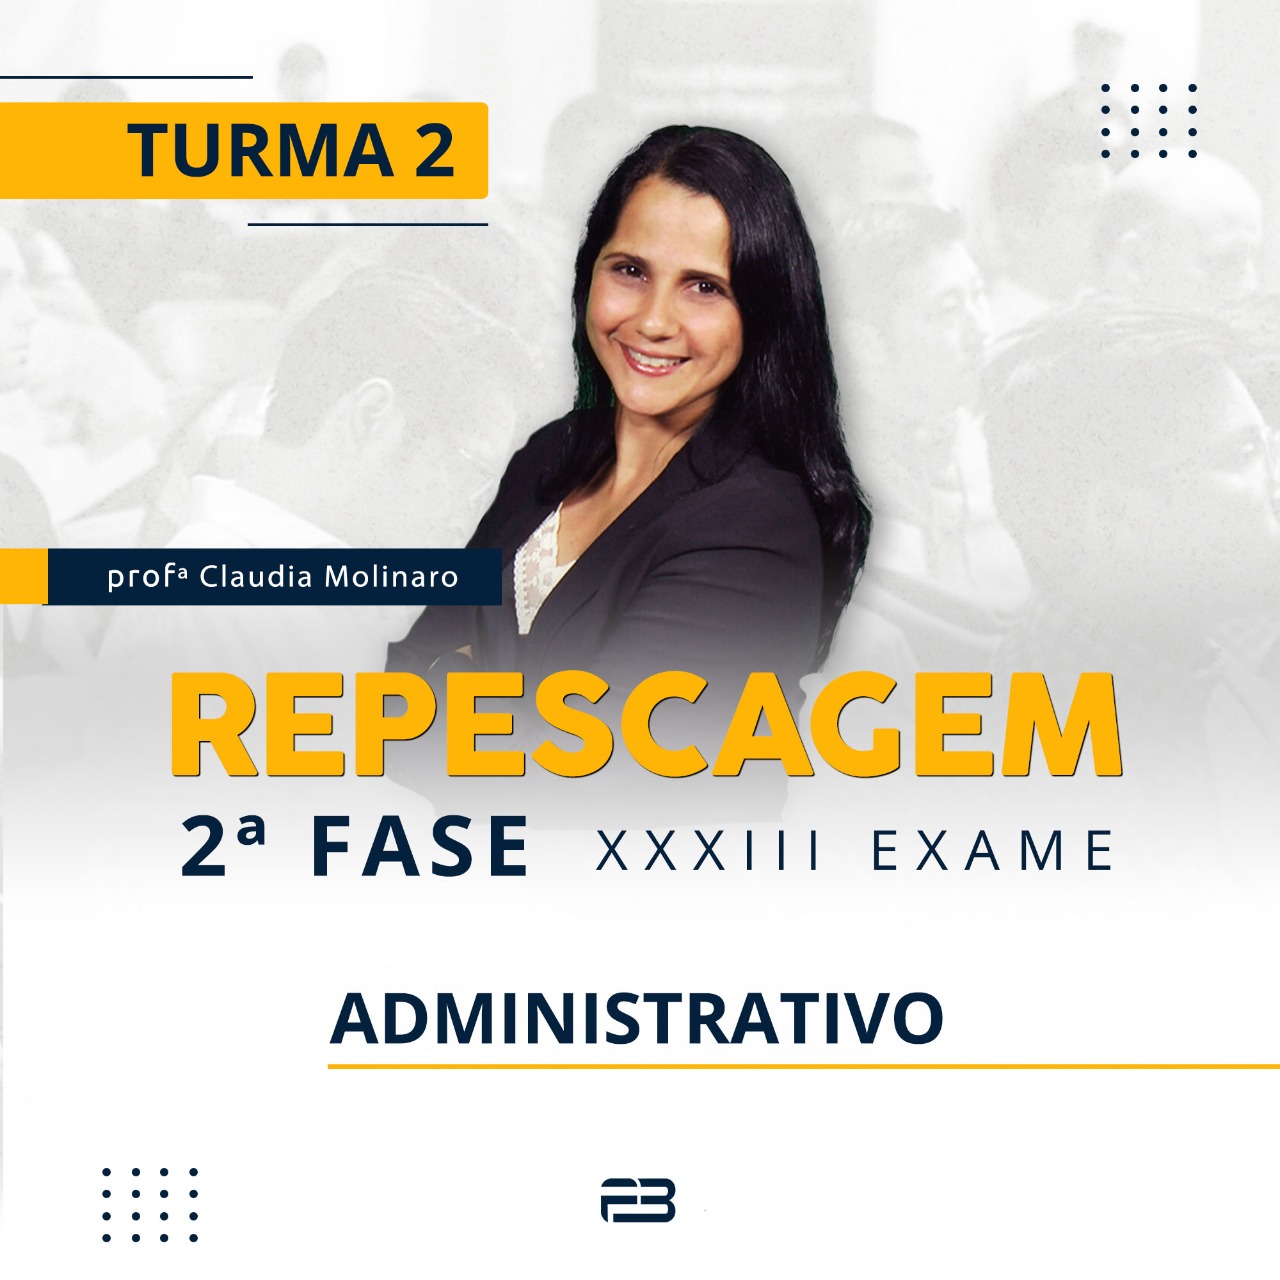 2ª FASE REPESCAGEM ADMINISTRATIVO TURMA 2 - XXXIII EXAME ONLINE